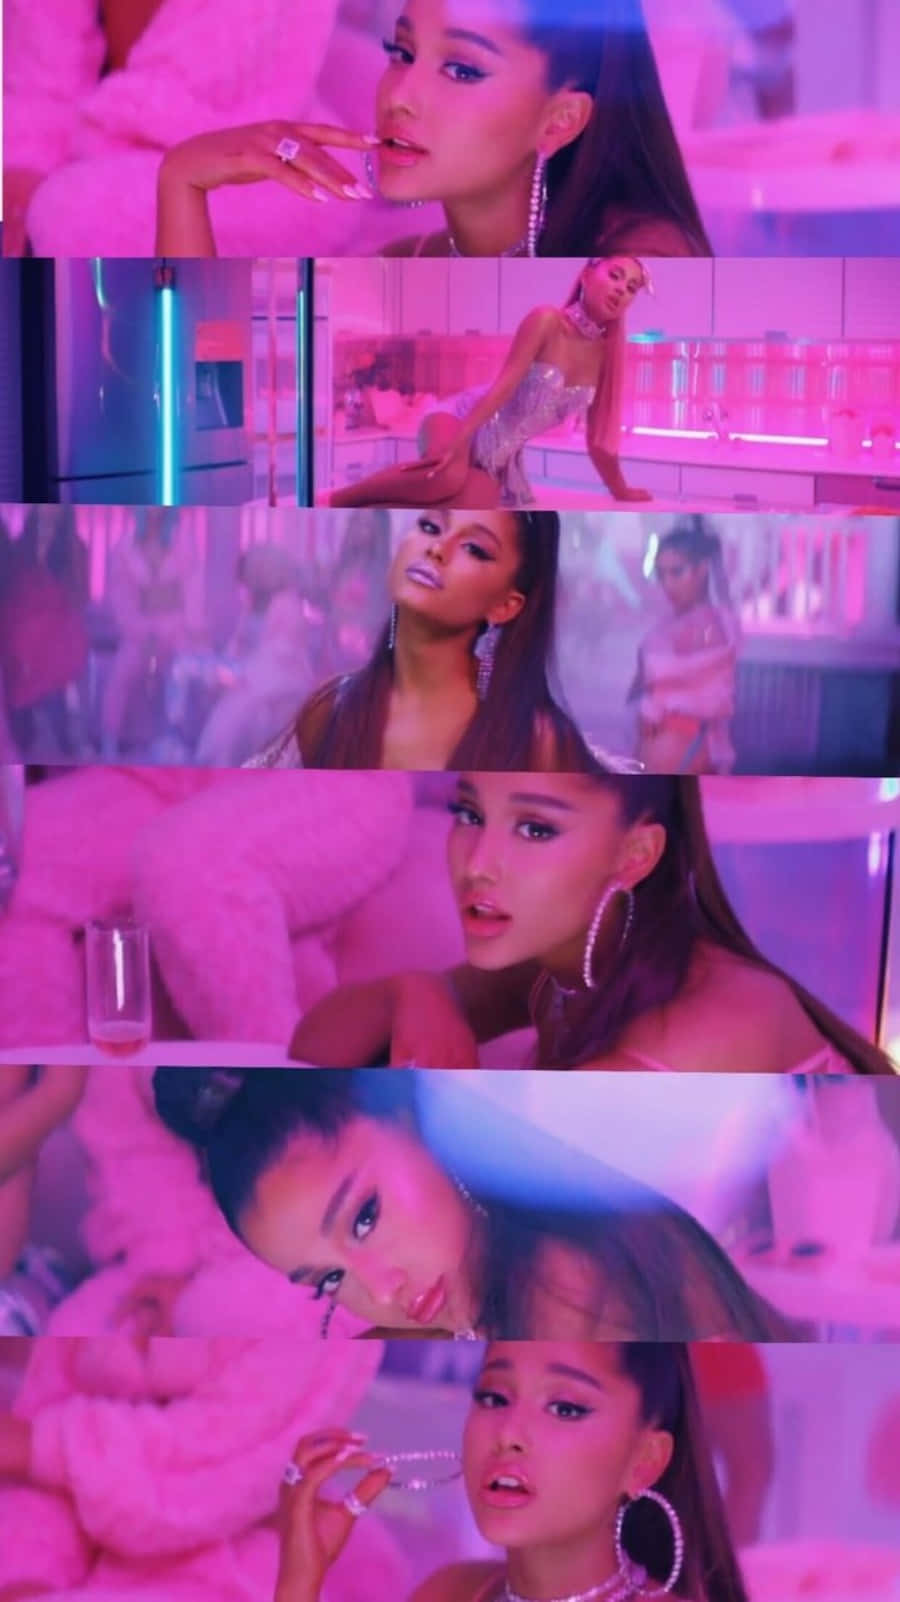 Ariana Grande 7 Rings Music Video Wallpaper